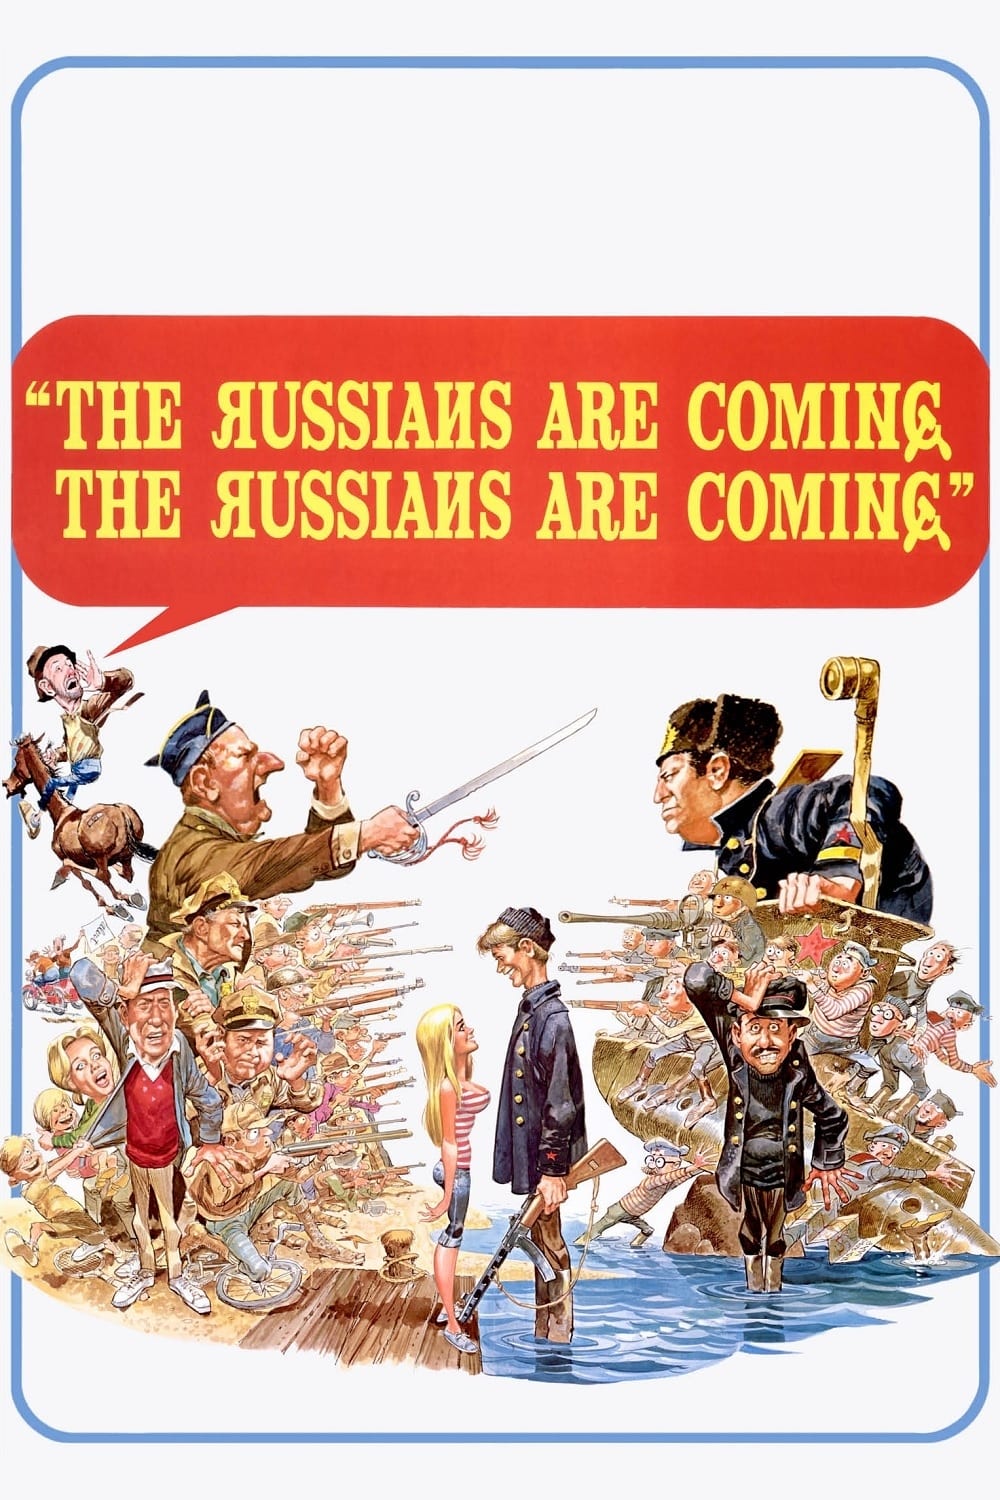 הרוסים באים! הרוסים באים!